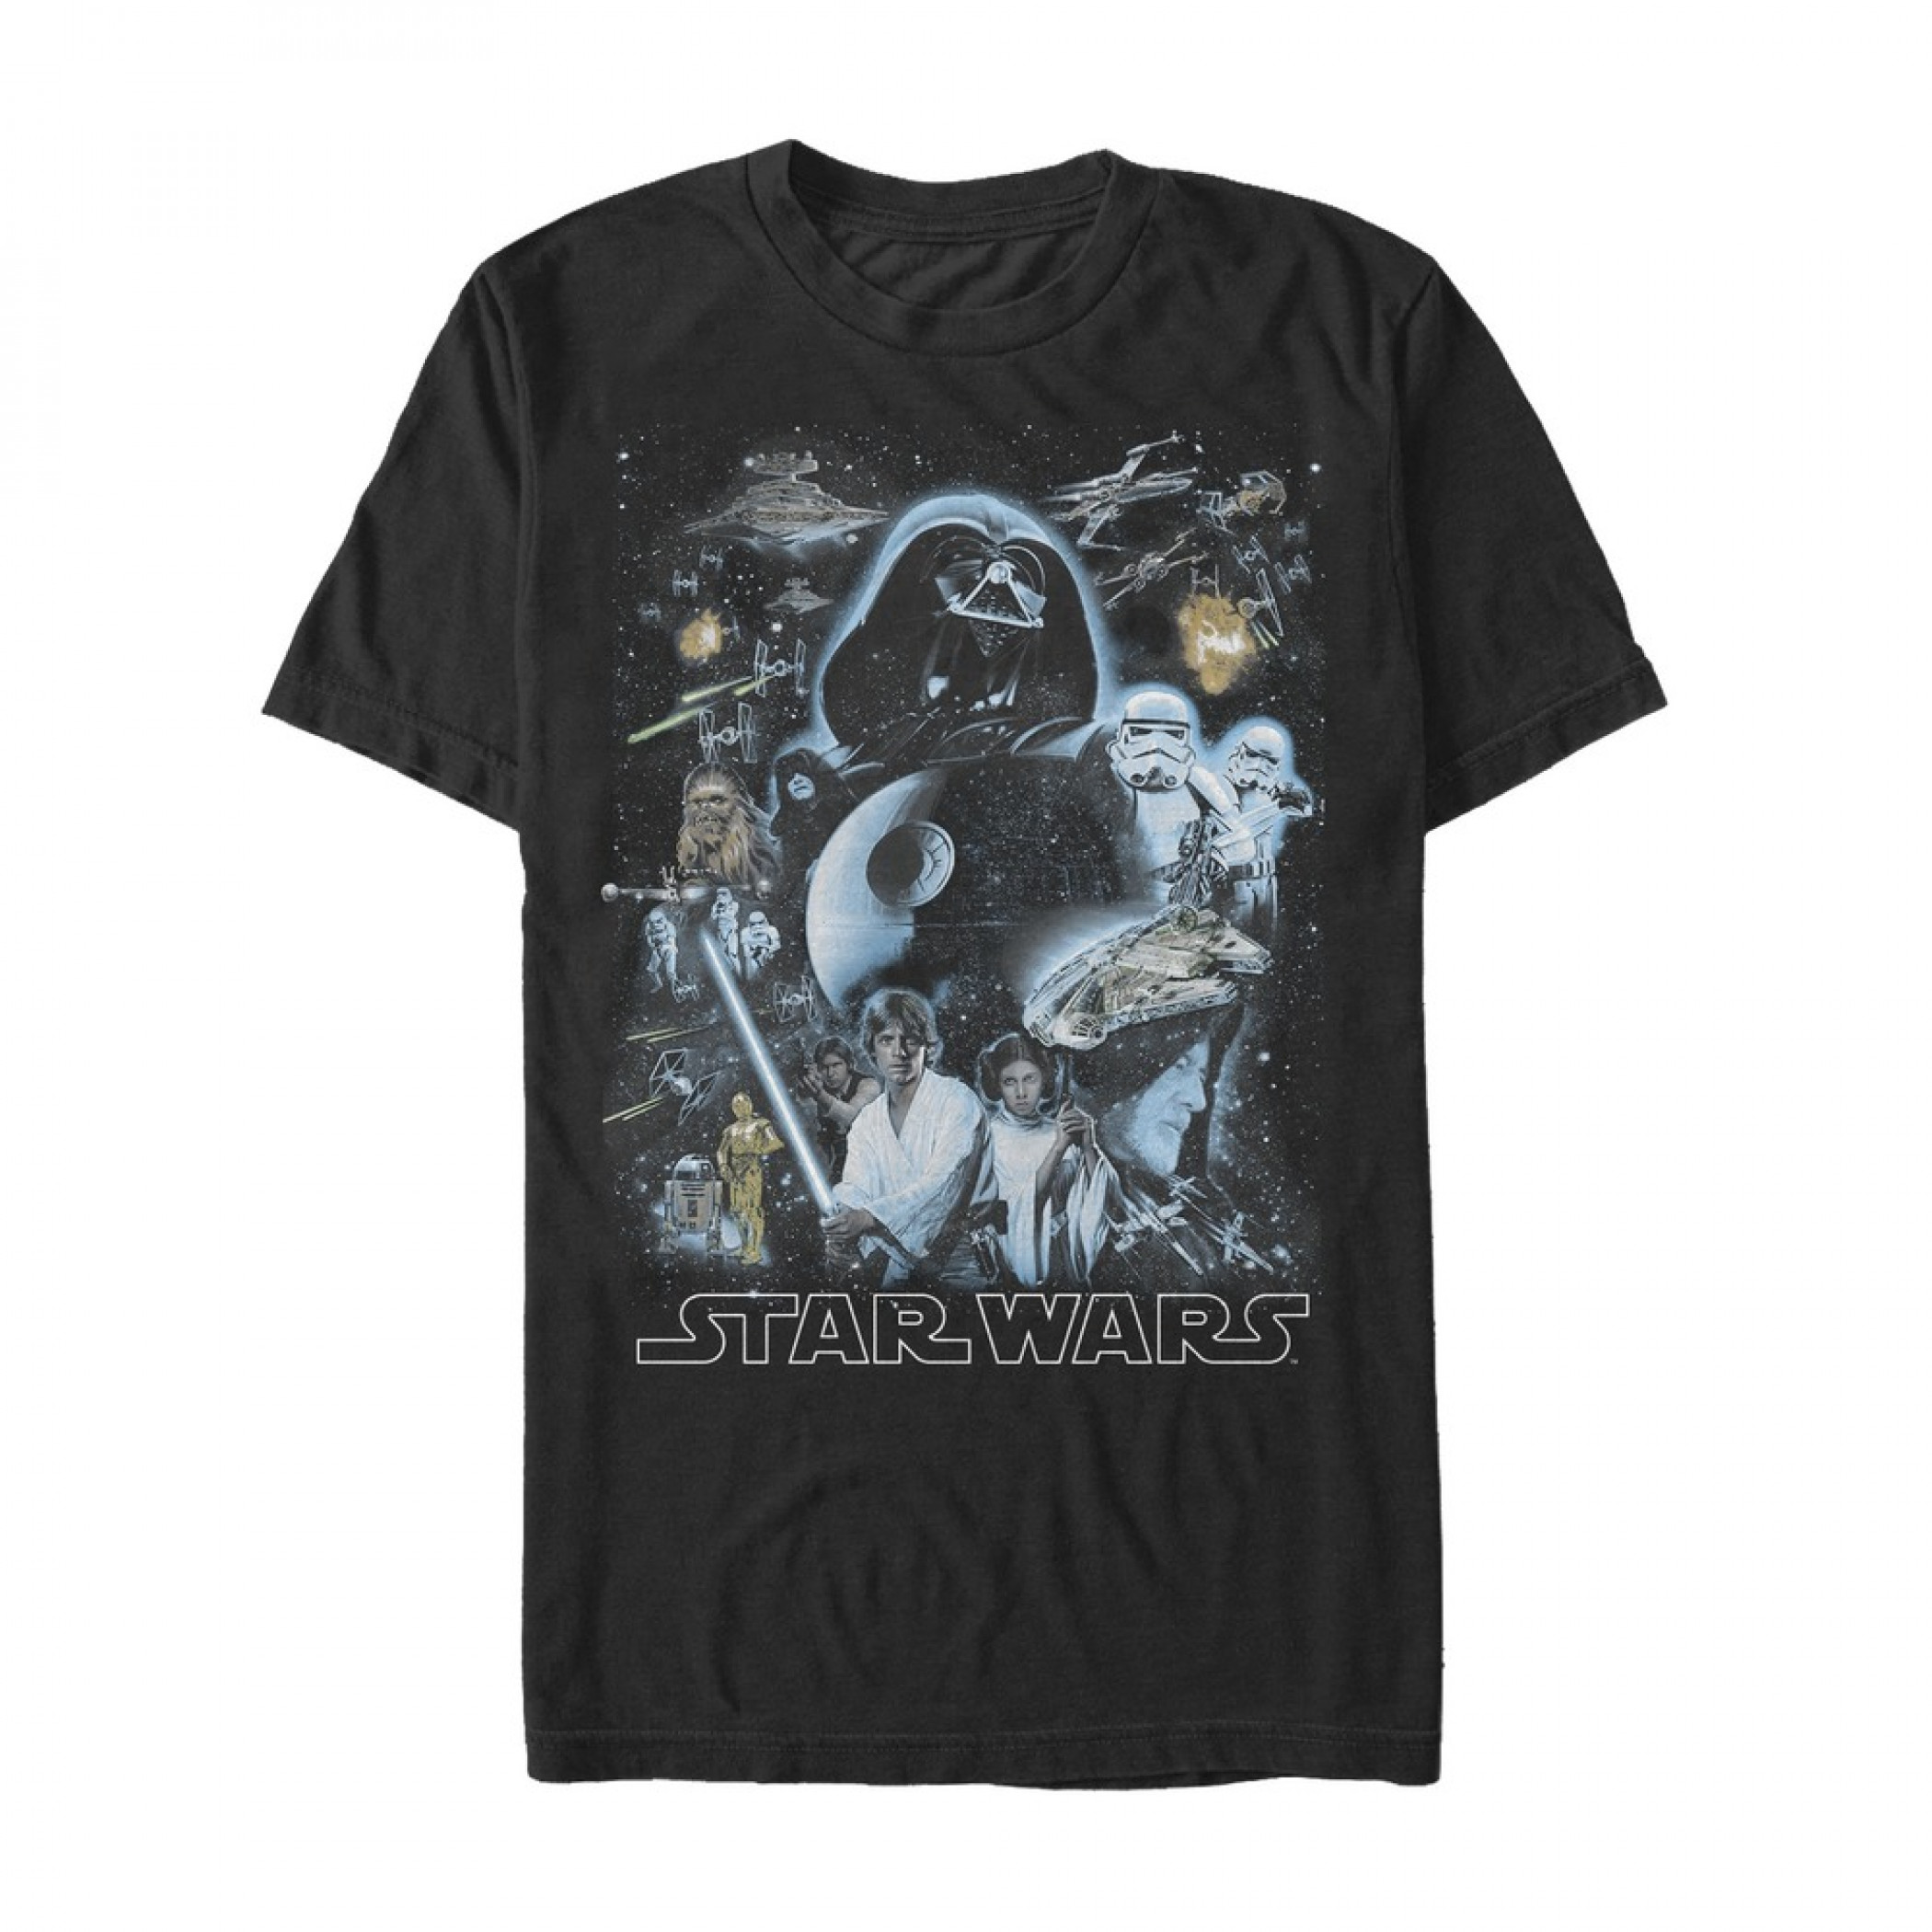 Star Wars Galaxy of the Stars T-Shirt